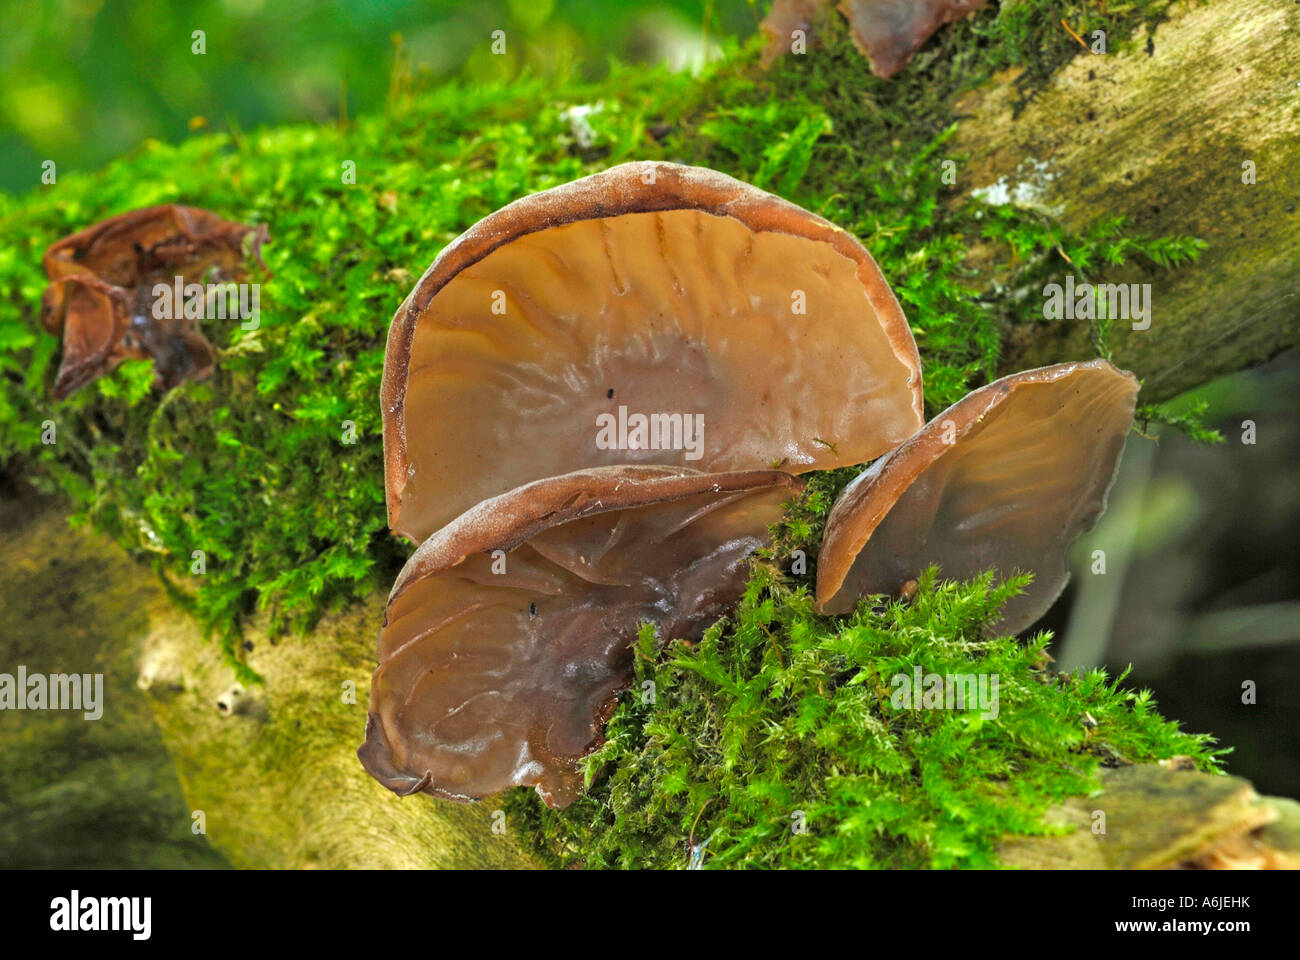 Wood Ear Fungus, Ear Fungus, Mu-err Fungus or Jews Ear (Auricularia auricula judae, Auricularia polytricha) on rotting wood Stock Photo